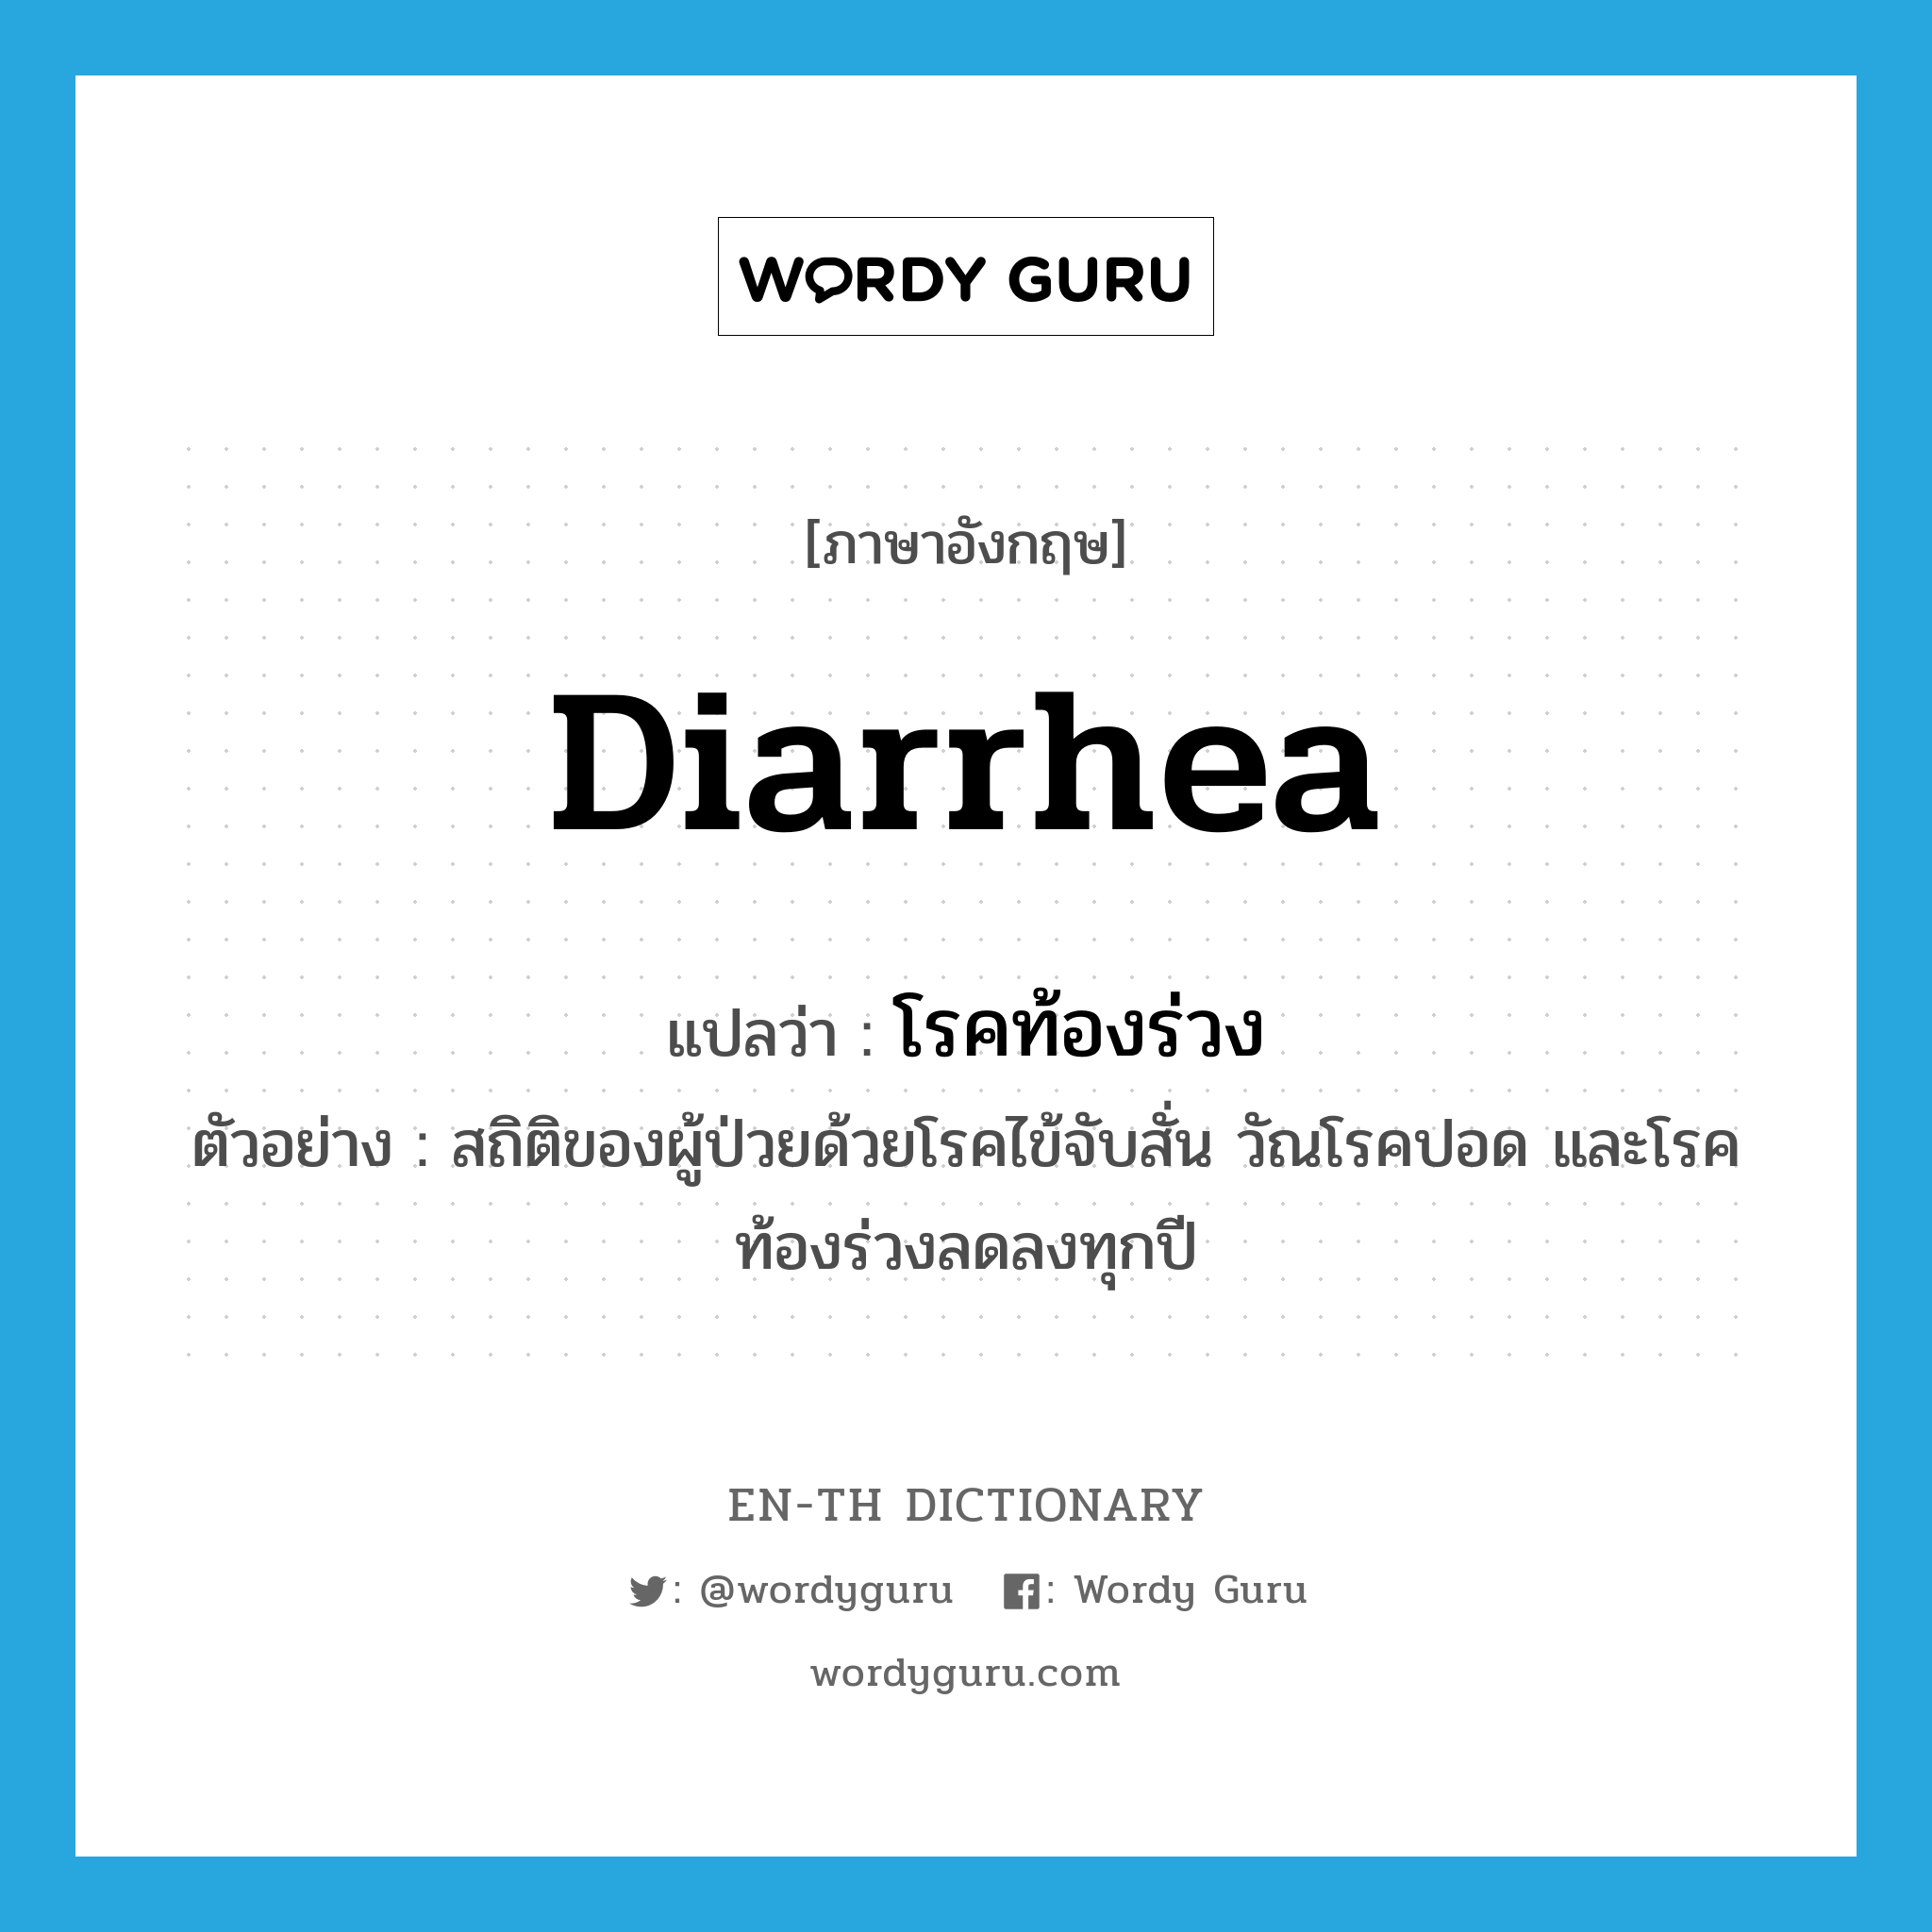 diarrhea แปลว่า?, คำศัพท์ภาษาอังกฤษ diarrhea แปลว่า โรคท้องร่วง ประเภท N ตัวอย่าง สถิติของผู้ป่วยด้วยโรคไข้จับสั่น วัณโรคปอด และโรคท้องร่วงลดลงทุกปี หมวด N